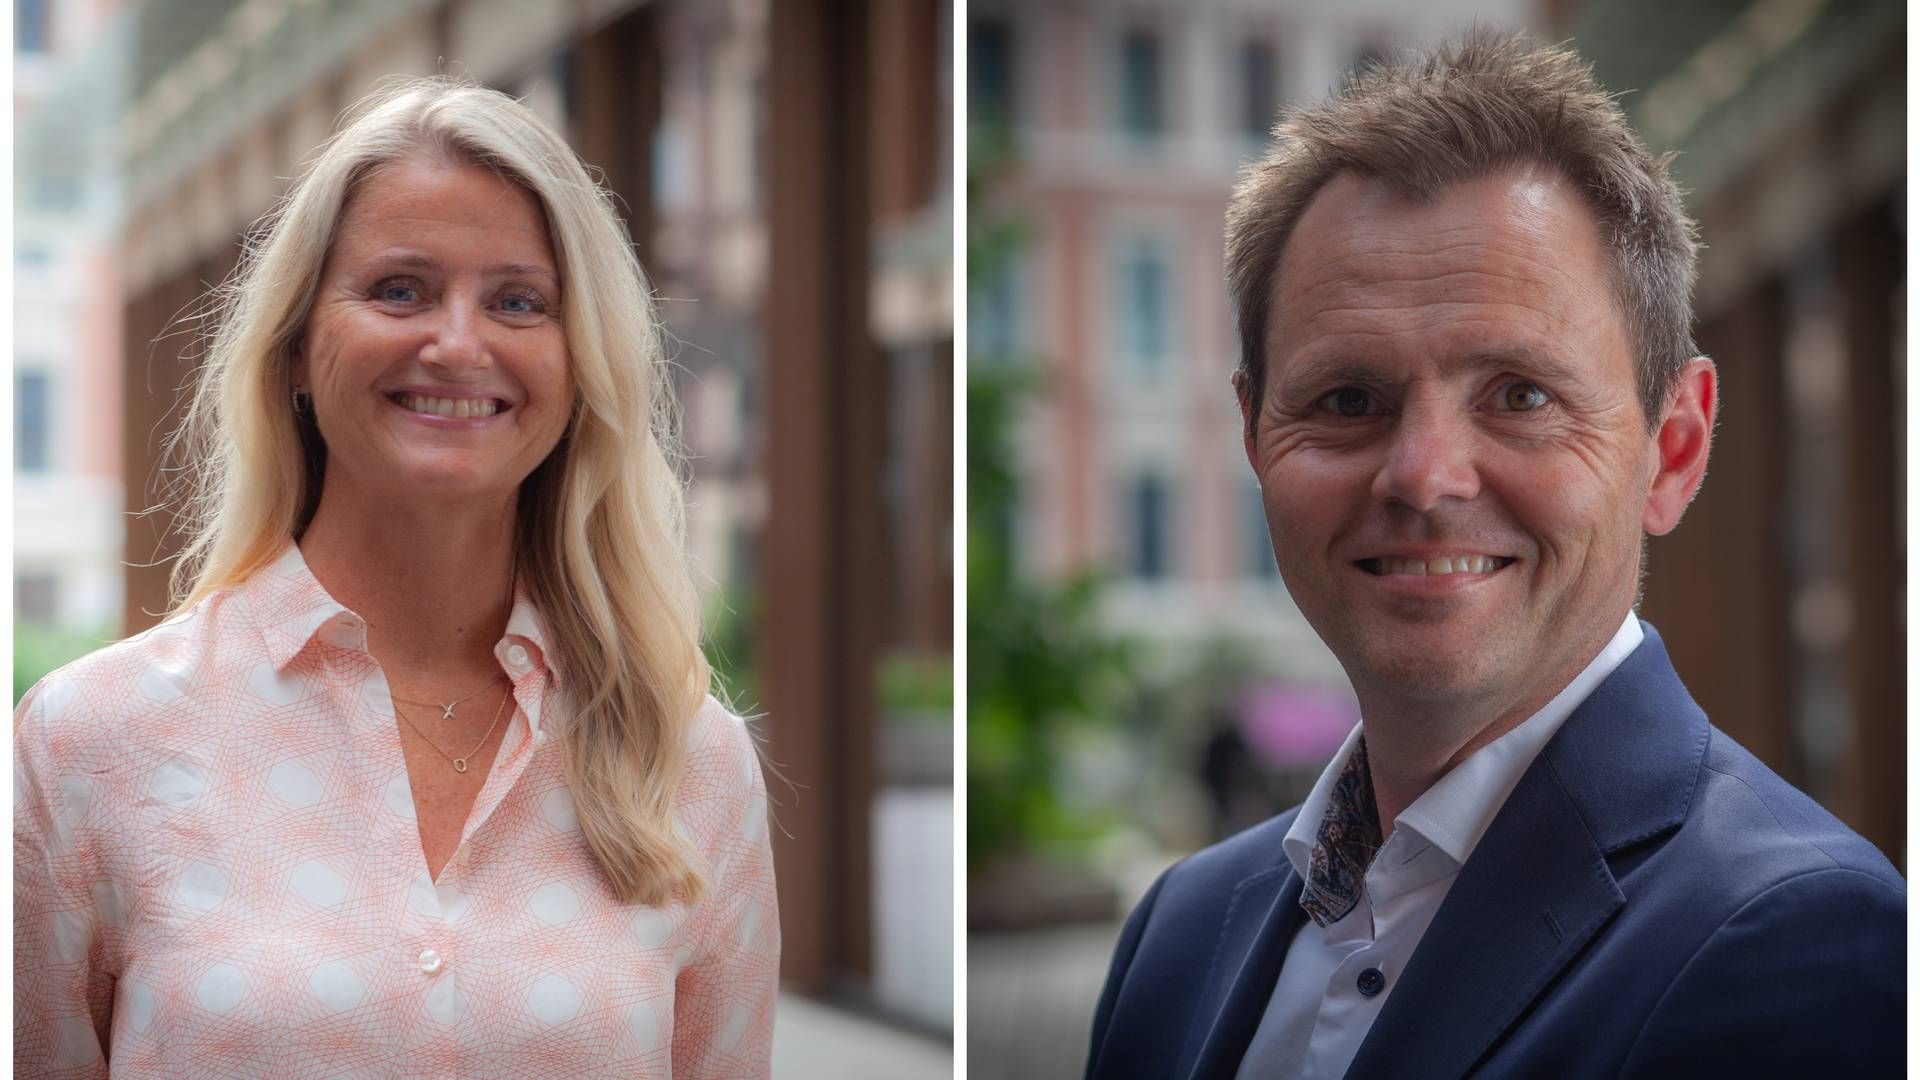 ANSVAR: Unn Hofstad og Andreas Henriksen Lerø mener private og offentlige aktører har et ansvar om å ta vare på eksisterende bygg. | Foto: Dag Ermesjø